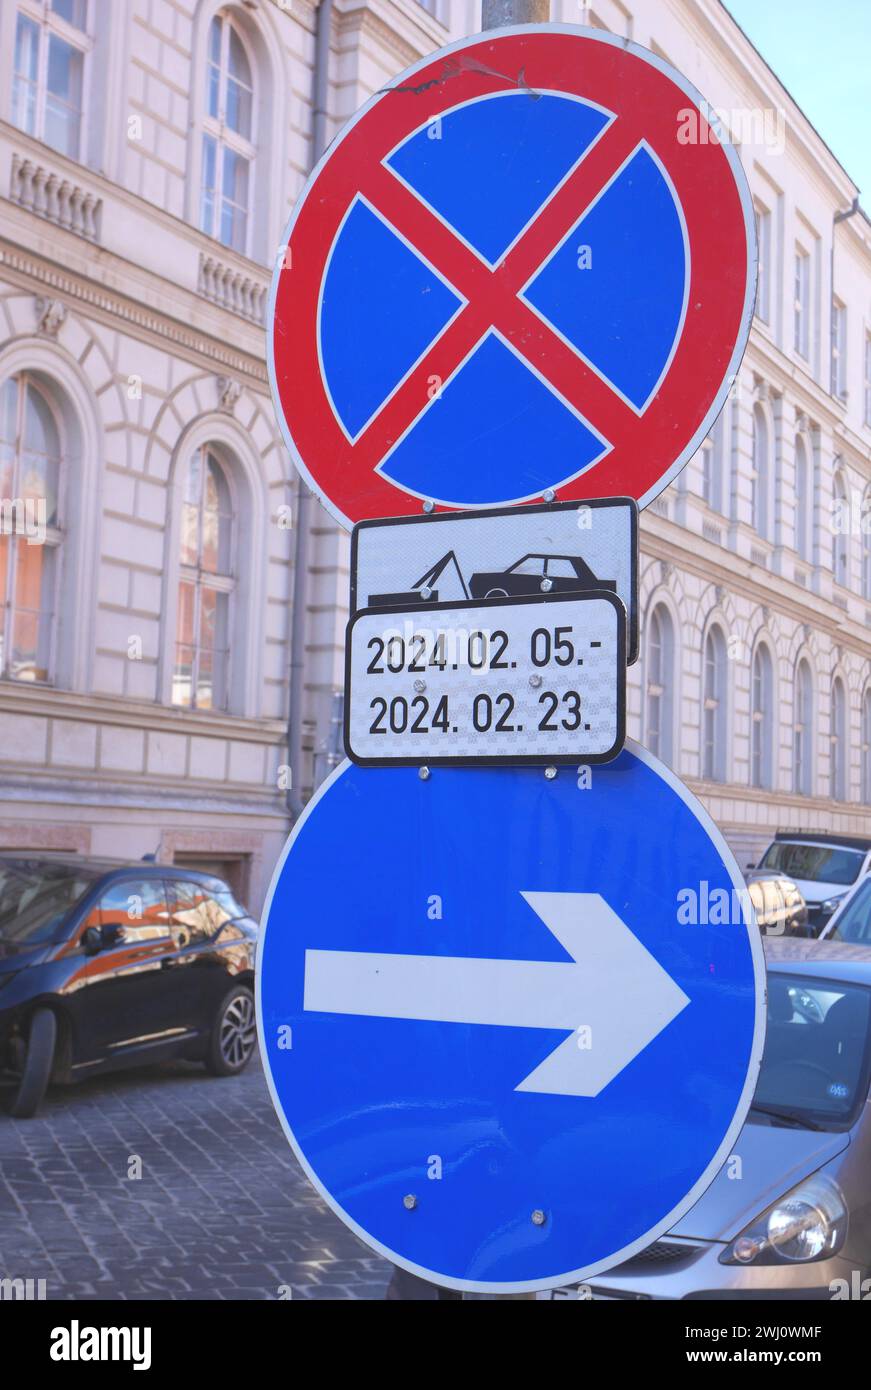 Kein Parkplatz mit angegebenen Daten und Zeiten und Rechtskurven, Burgviertel, Budapest, Ungarn Stockfoto